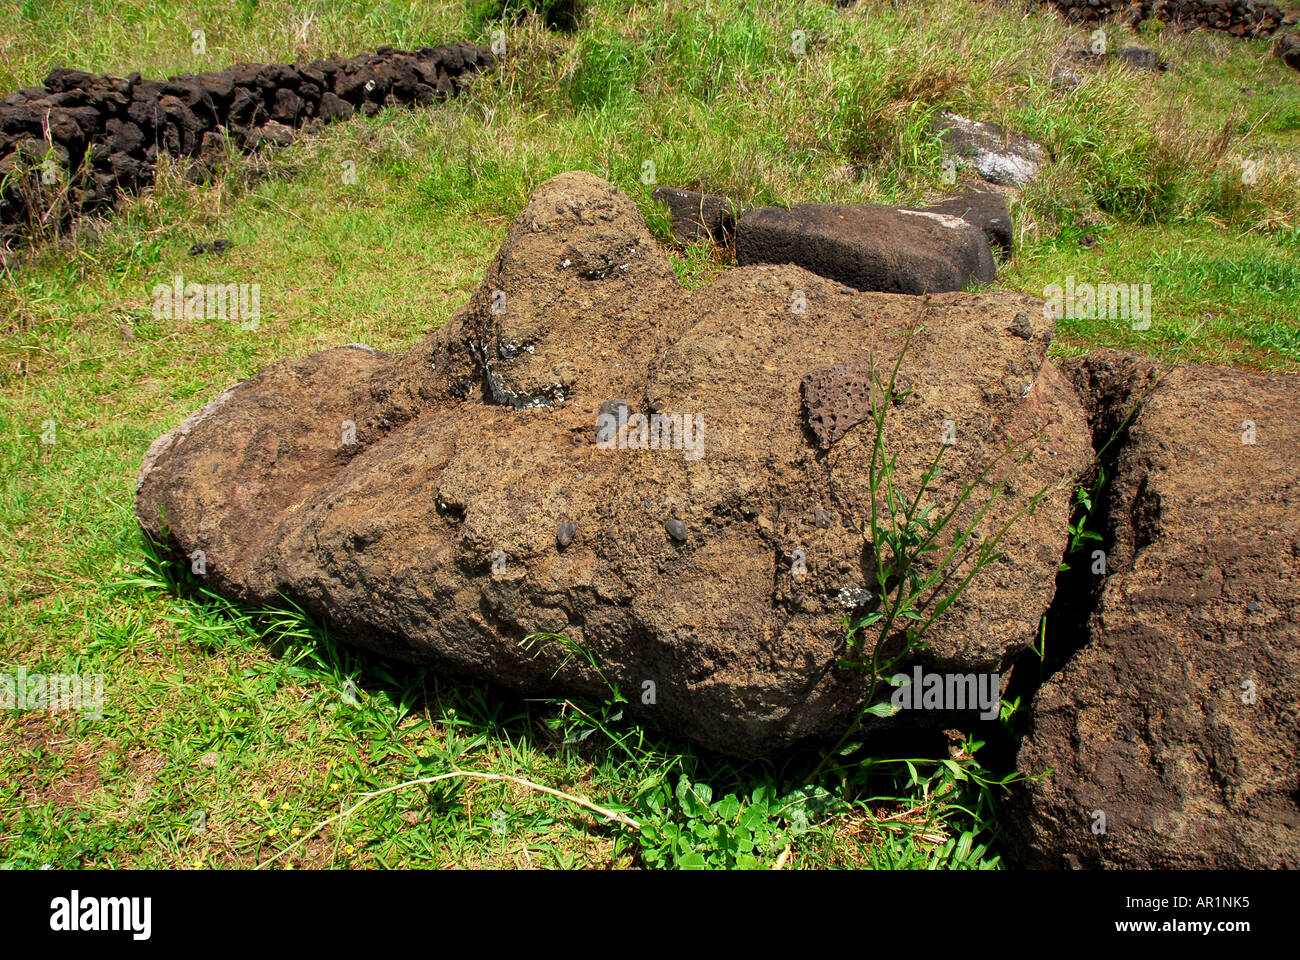 Chile Easter Island Ahu Riata fallen moai statue stone head broken neck Stock Photo